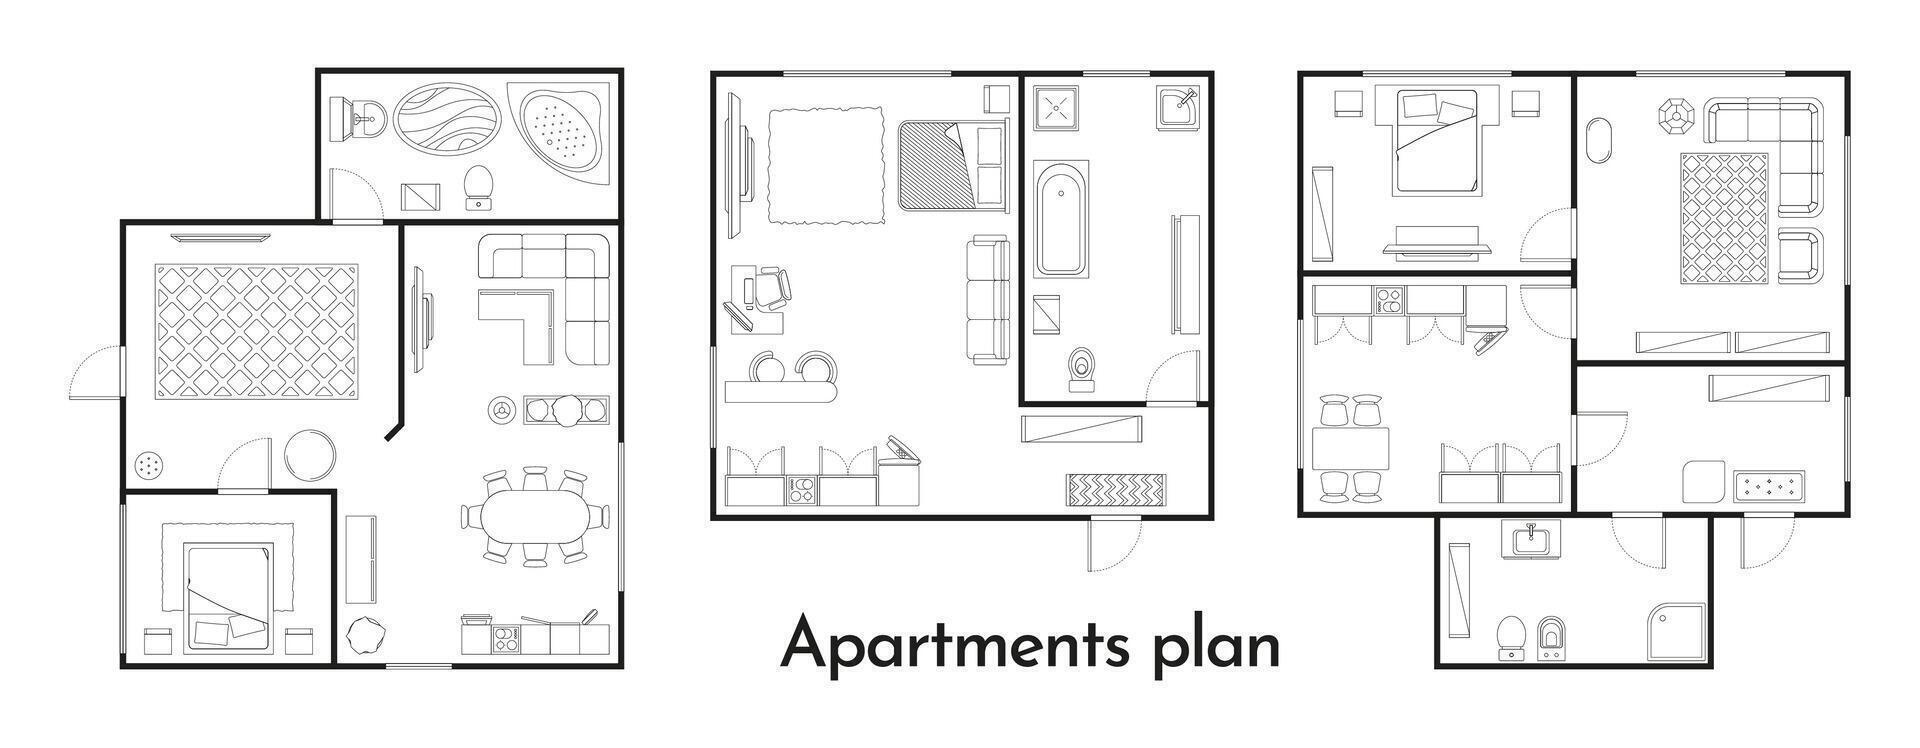 Departamento plan. habitación piso plan con mueble y ventana, hogar, oficina y dormitorio disposición. vector Departamento edificio piso plan